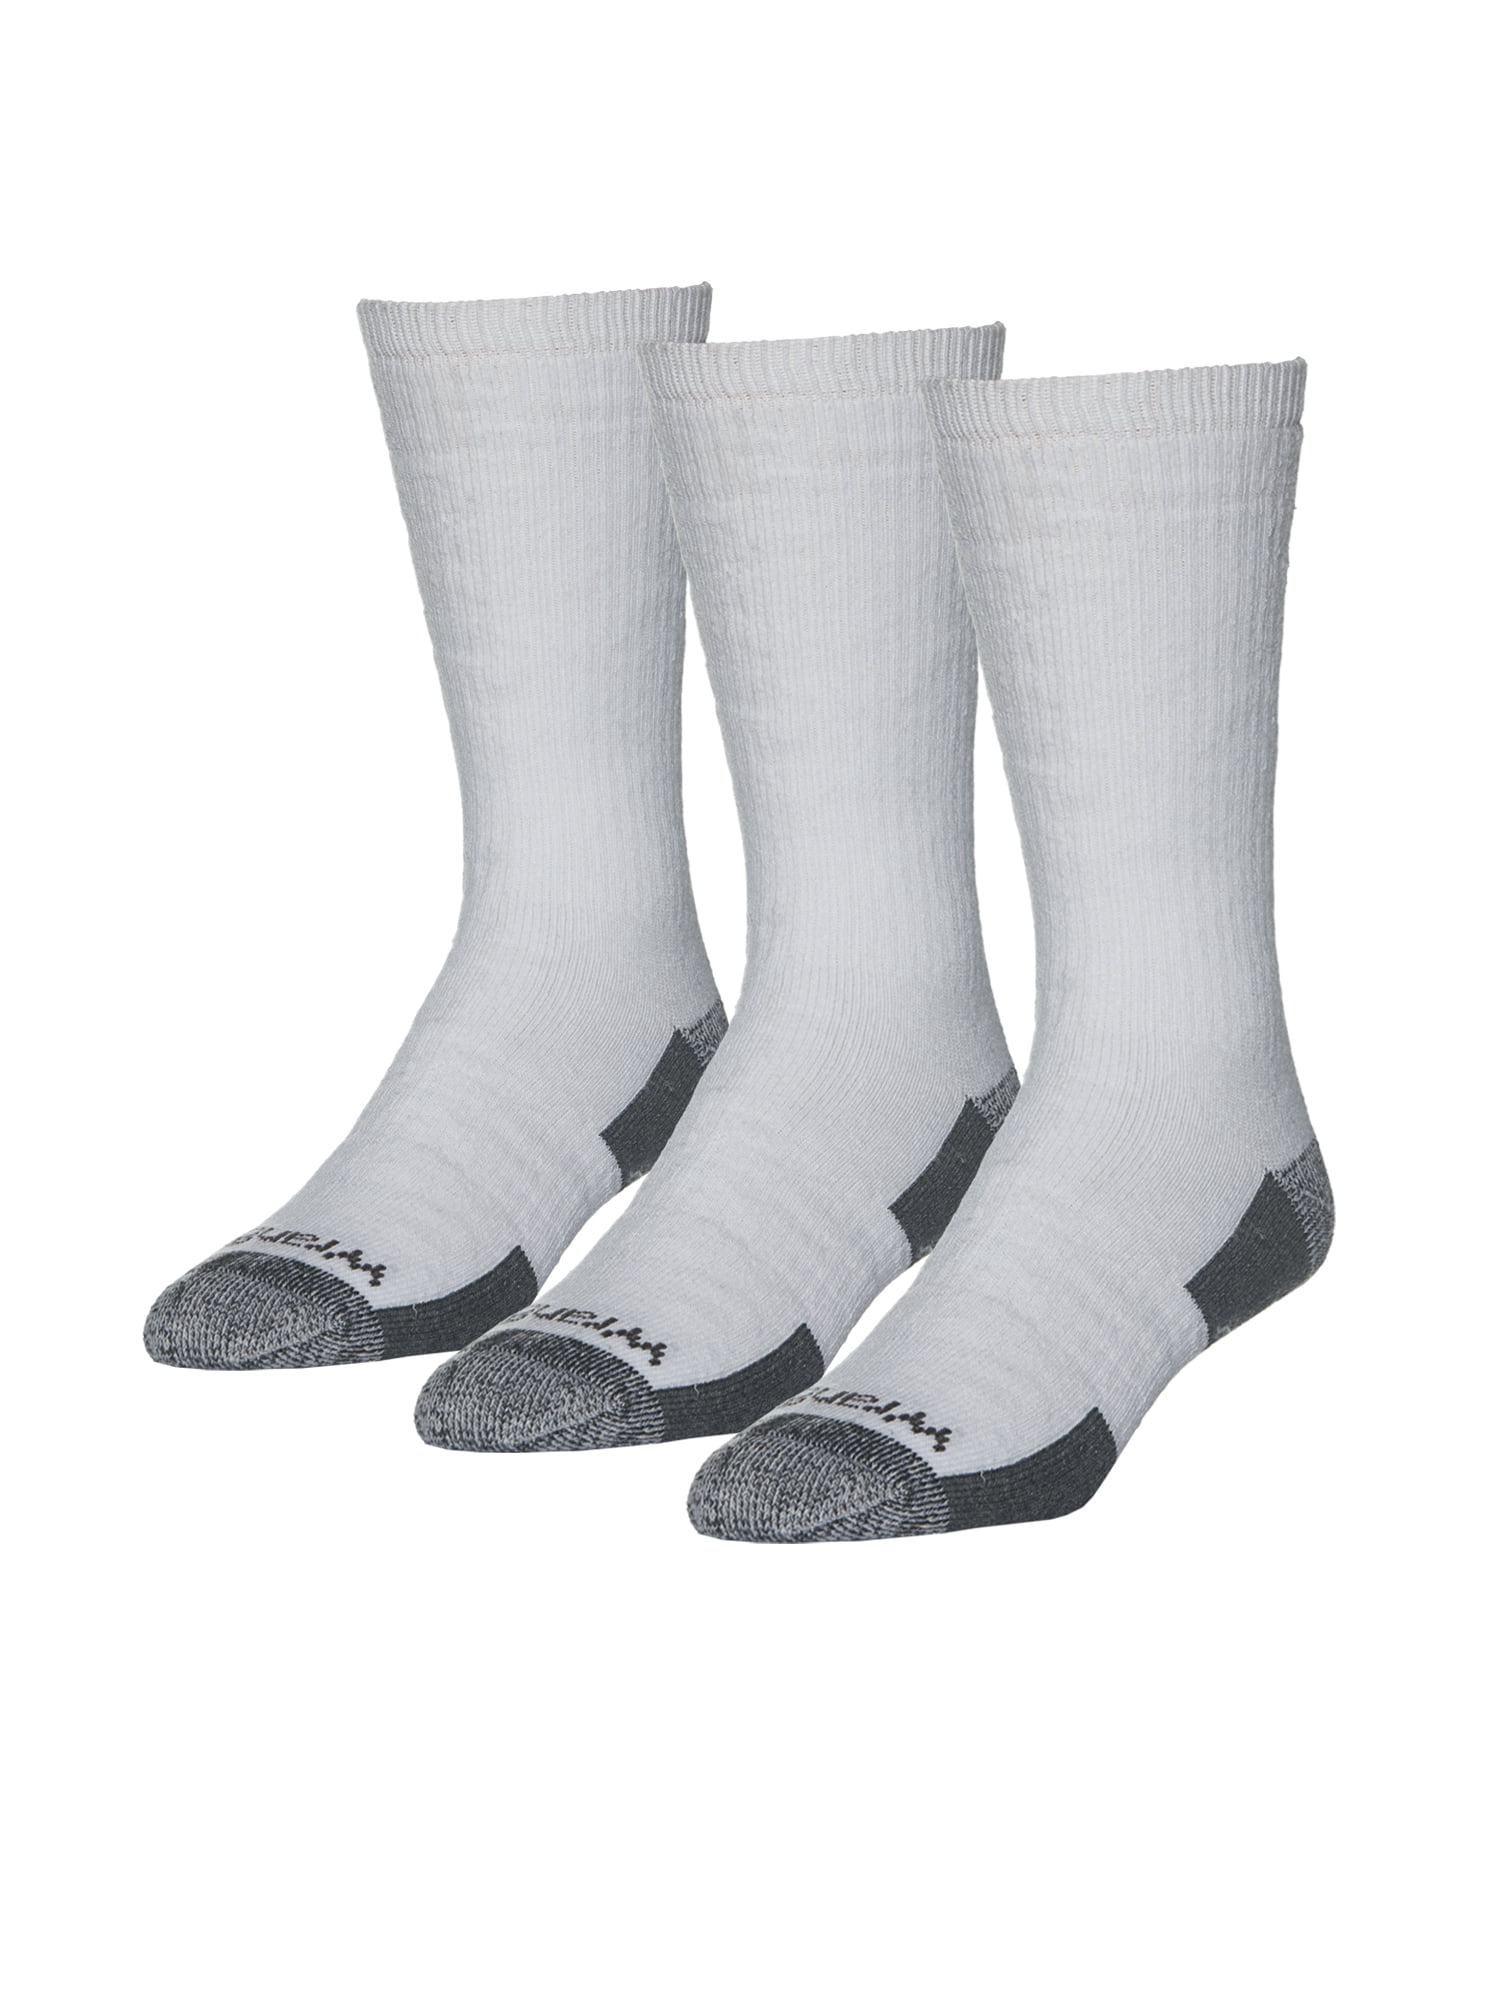 Wrangler Men's Socks - Walmart.com